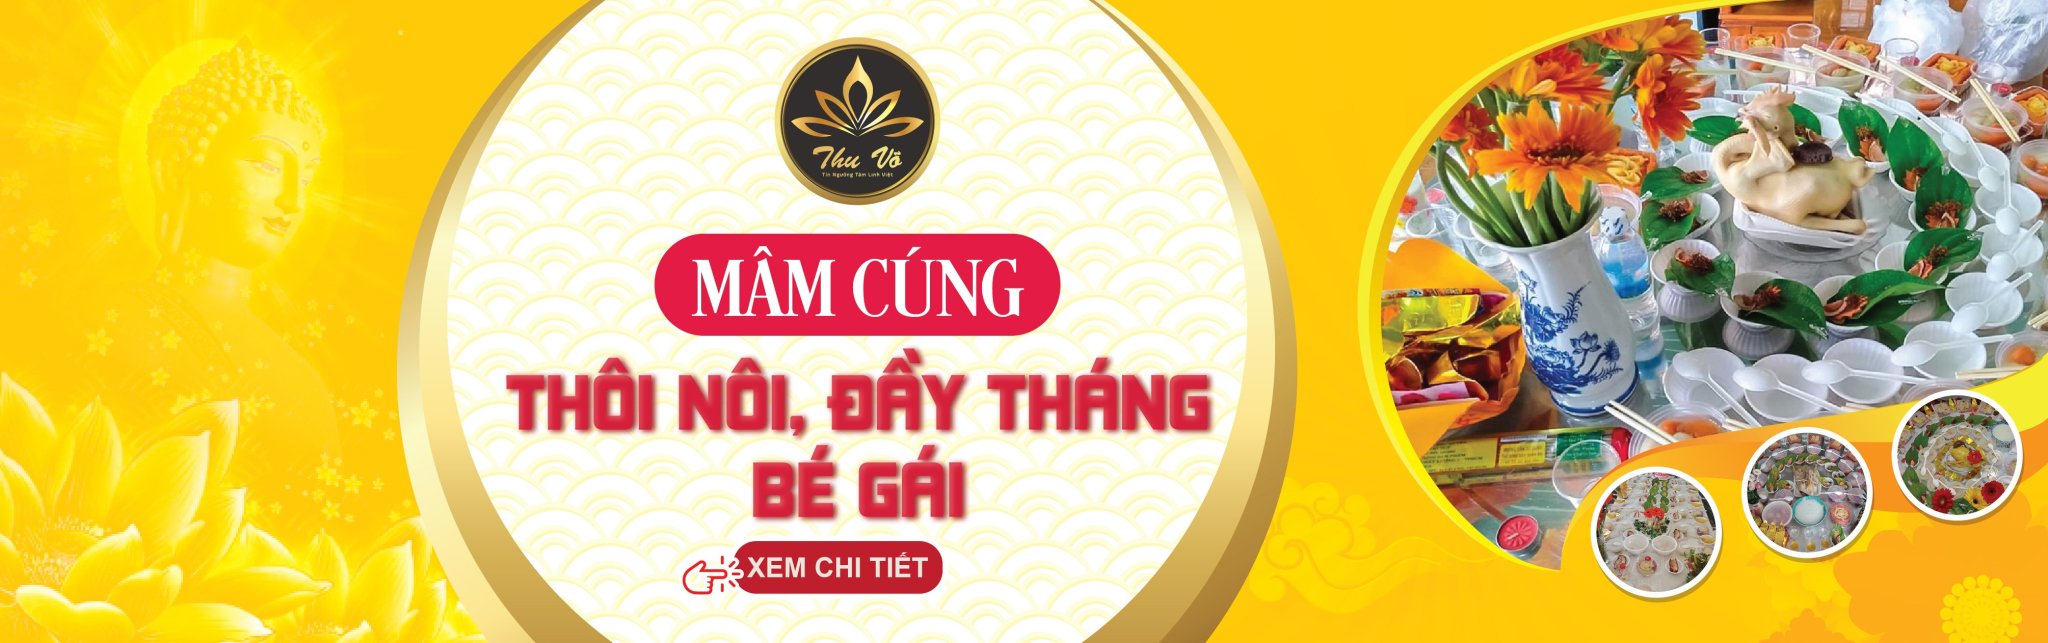 Mam Cung Thoi Noi Be Gai Banner